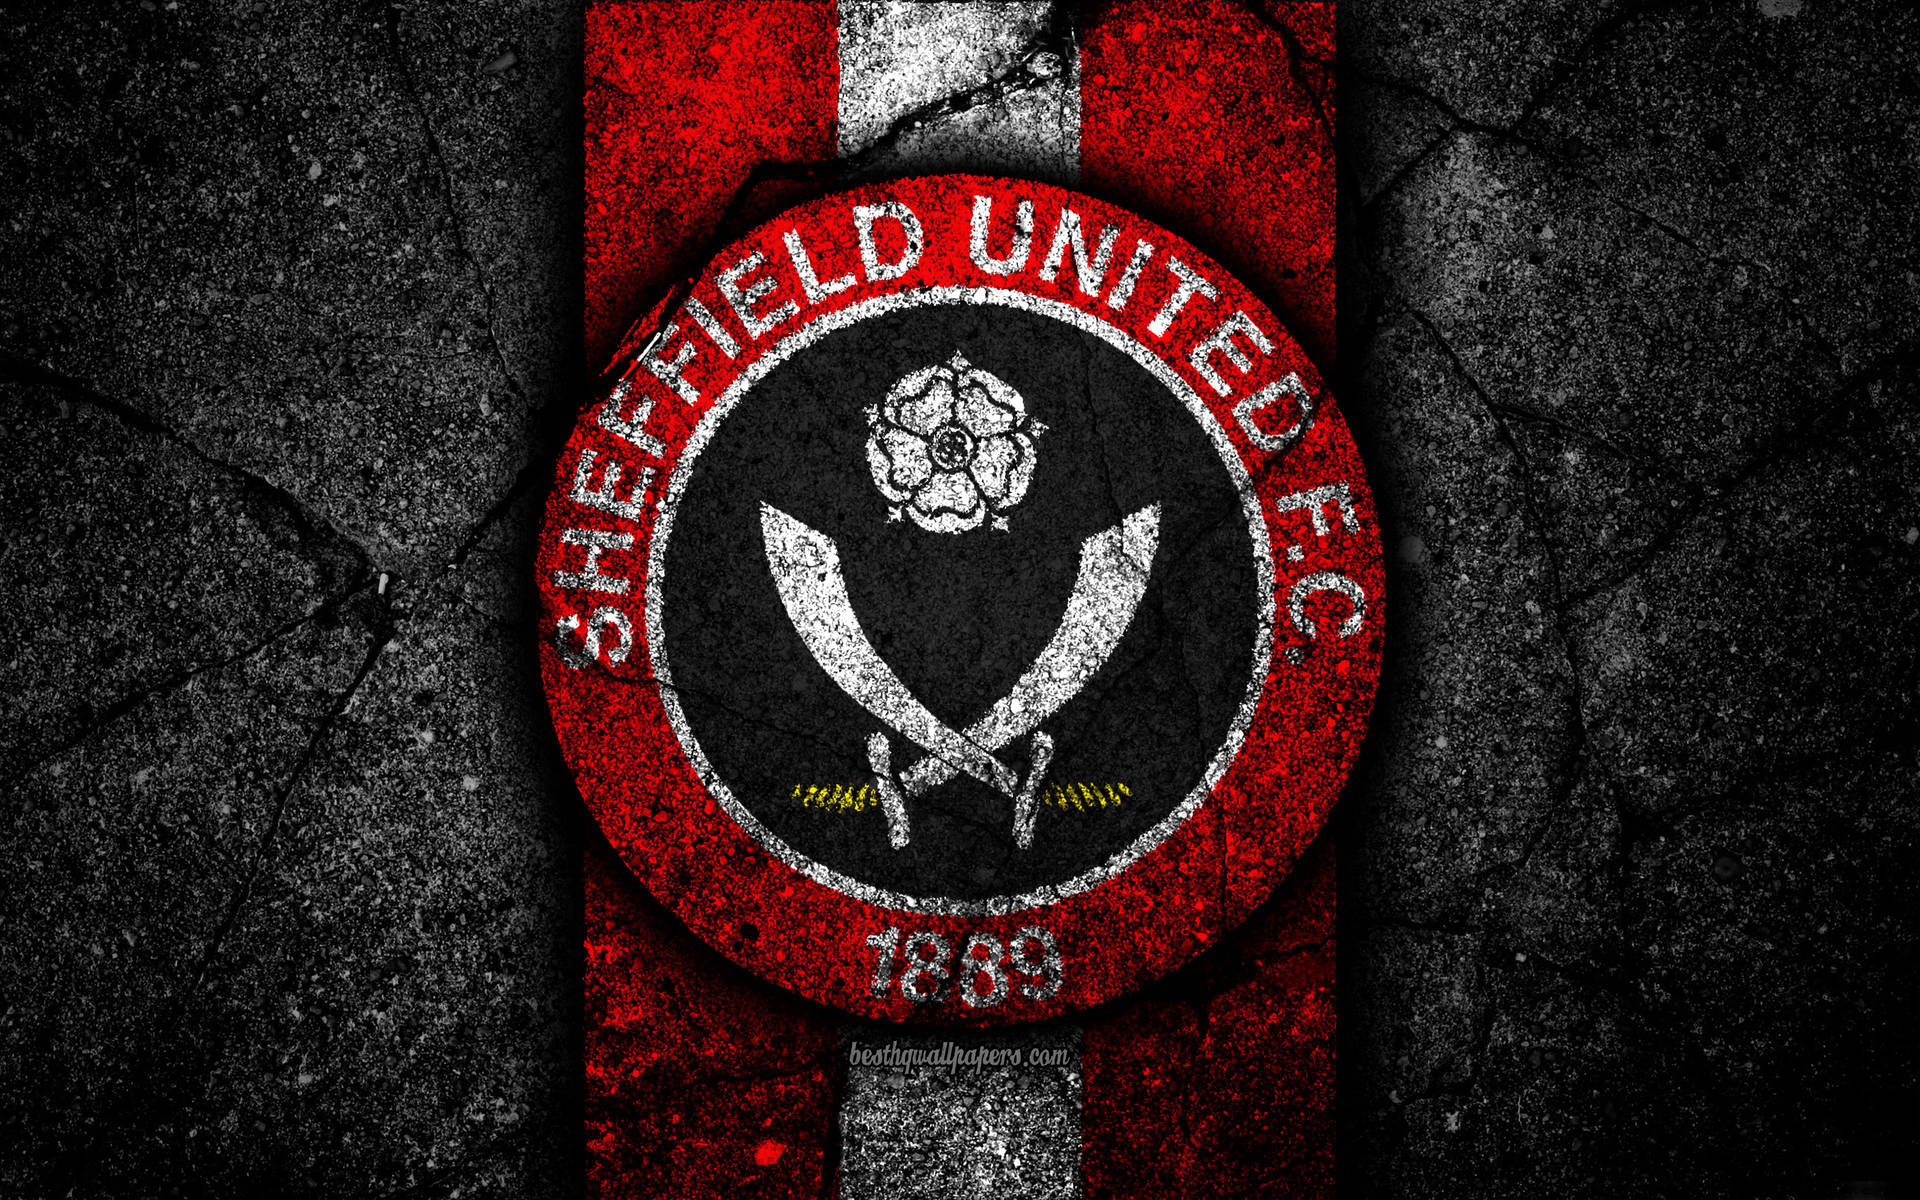 Sheffield United On Cracked Stone